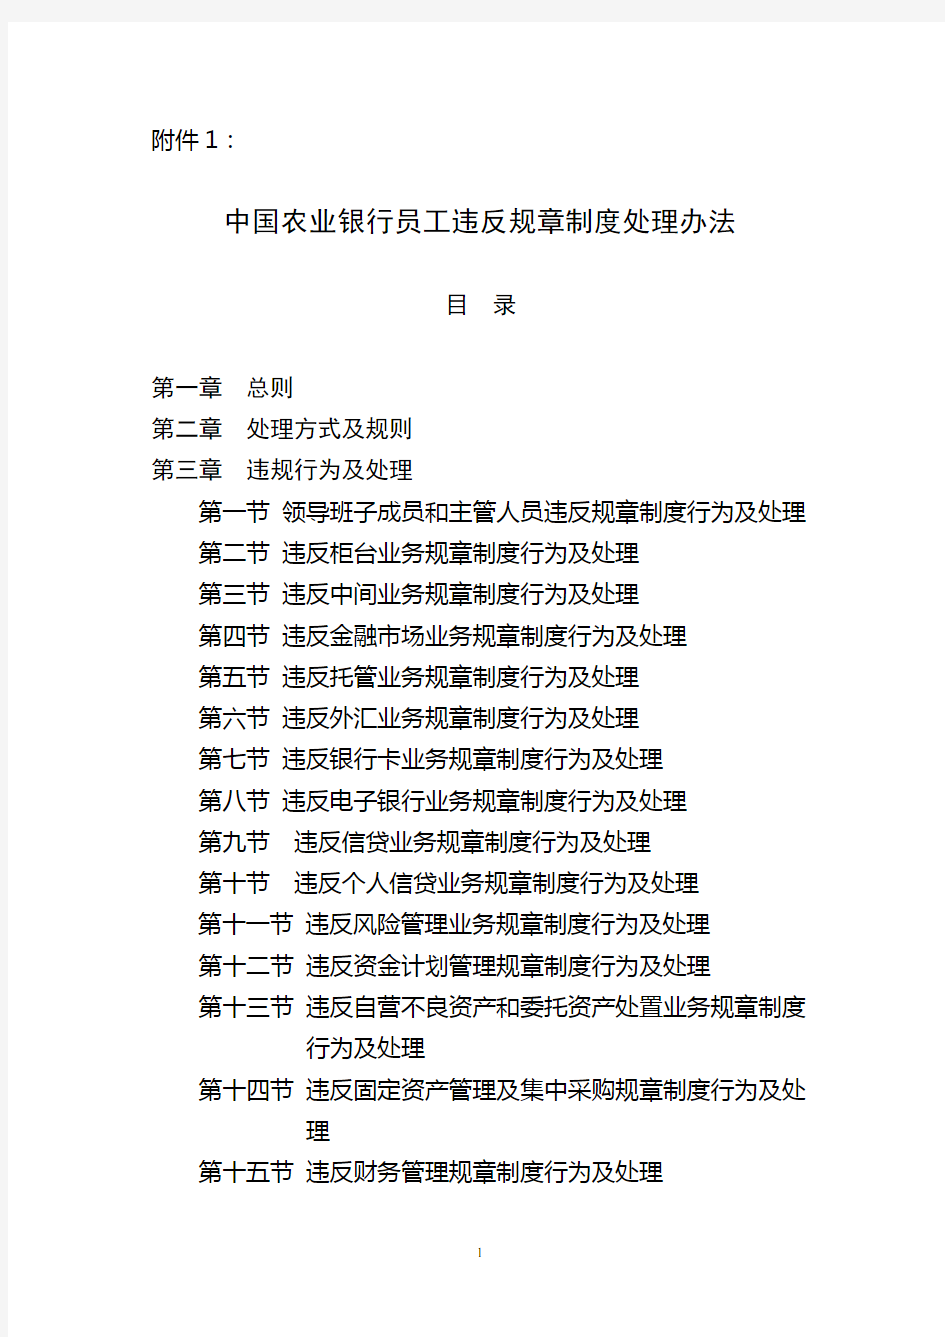 中国农业银行员工违反规章制度处理办法(修正案)